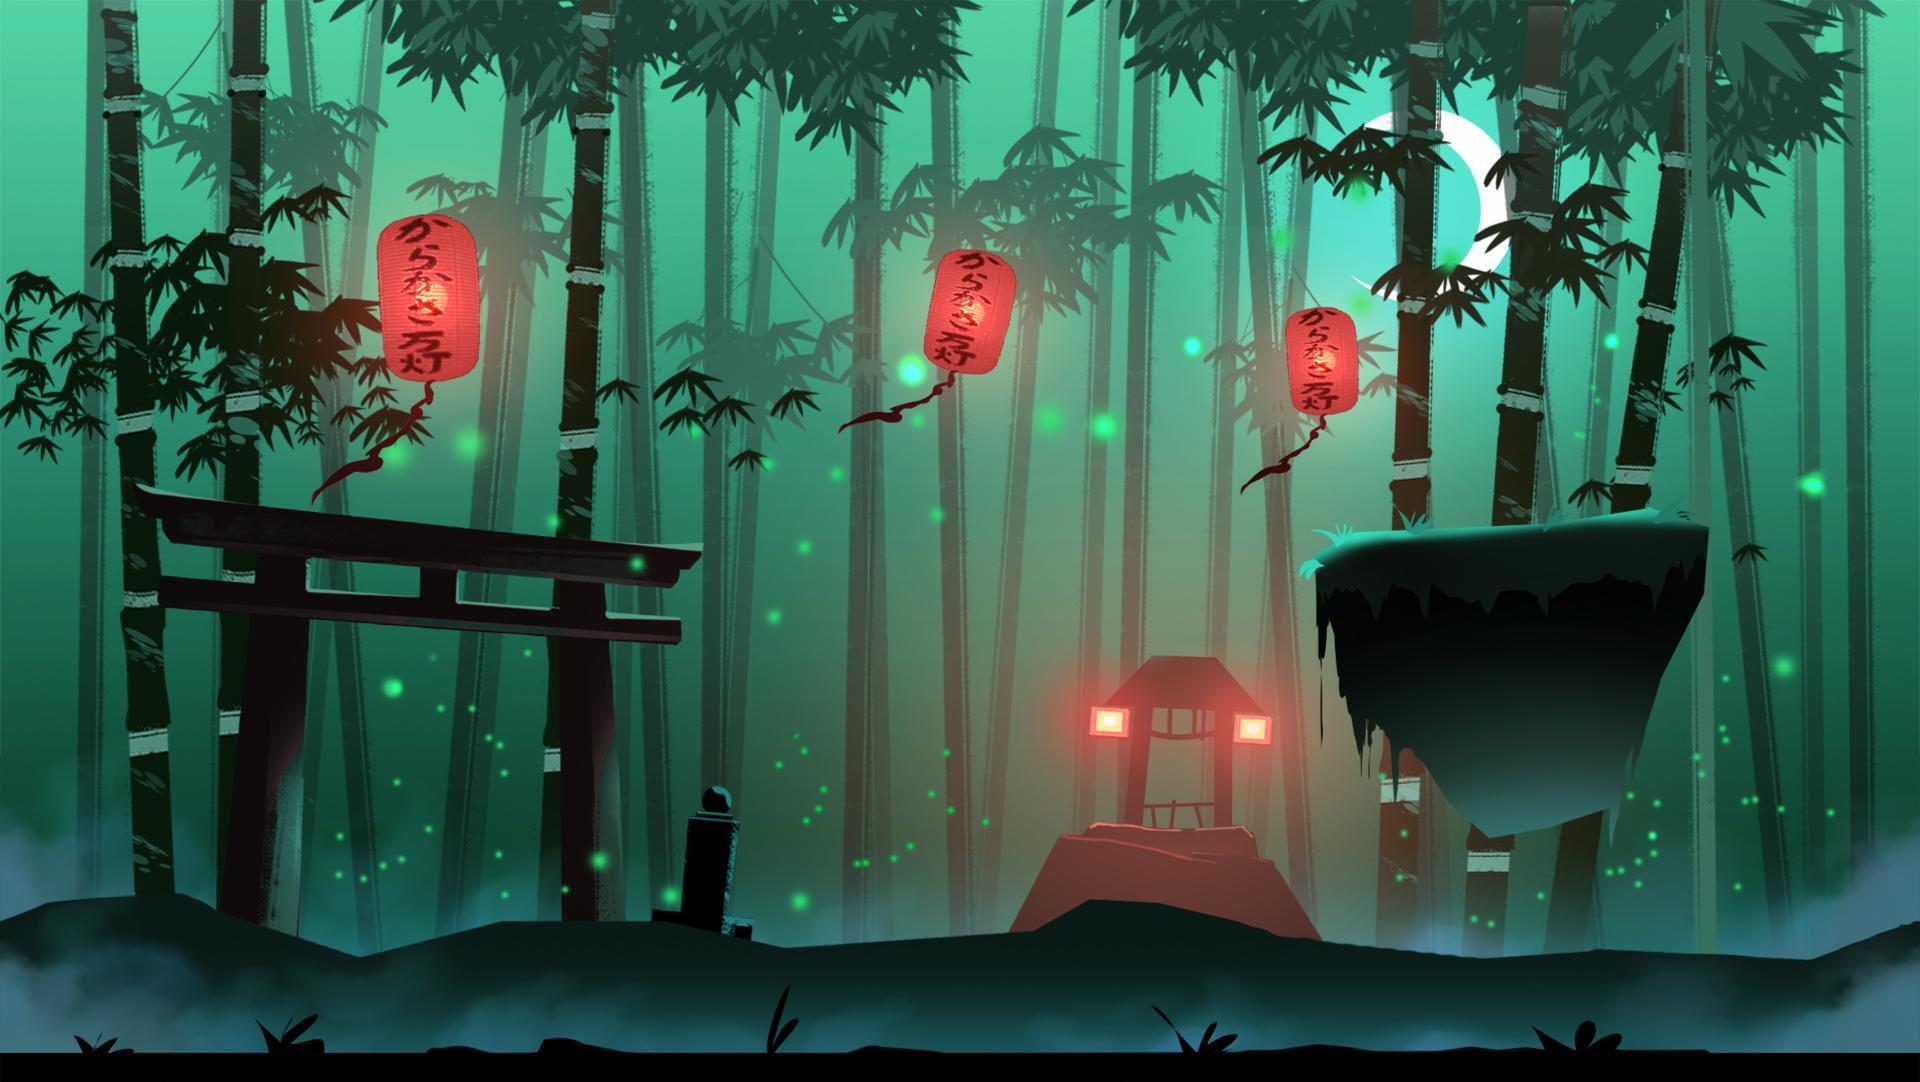 Screenshot 1 of ninjas panda 1.0